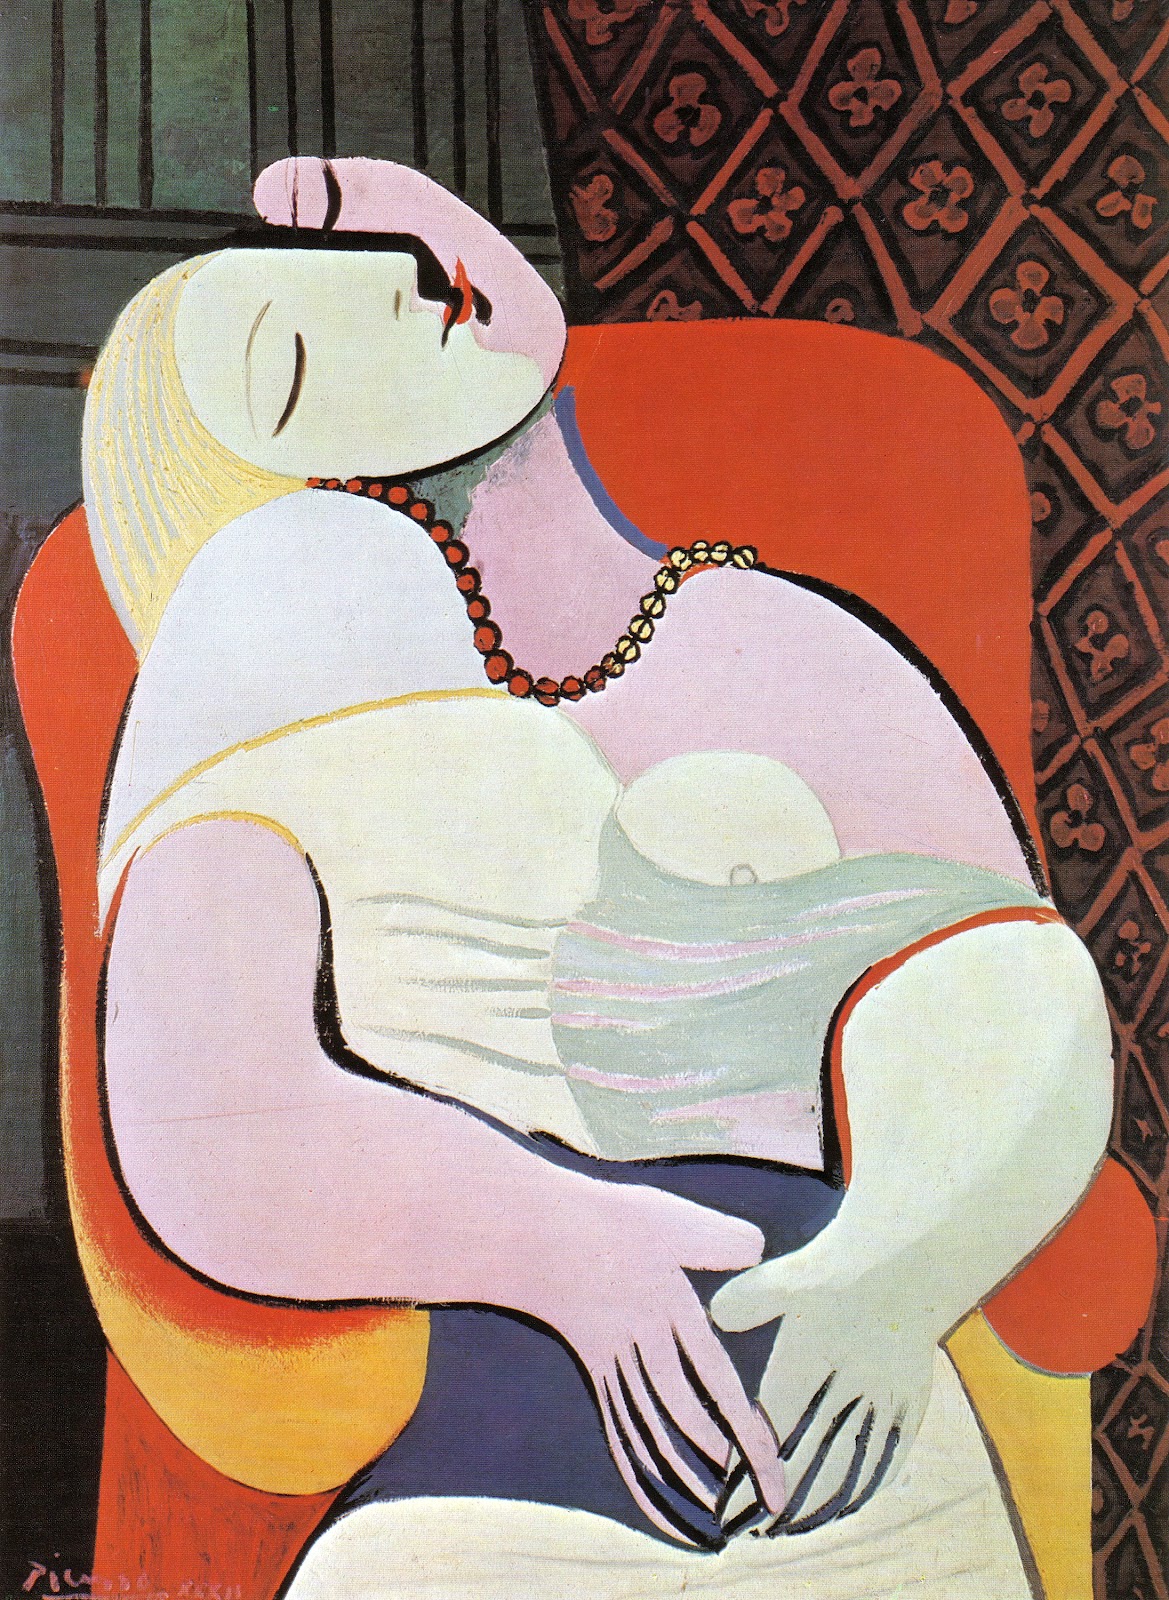 La Rêve (The Dream) by Pablo Picasso - 1932 - 130 cm × 97 cm private collection